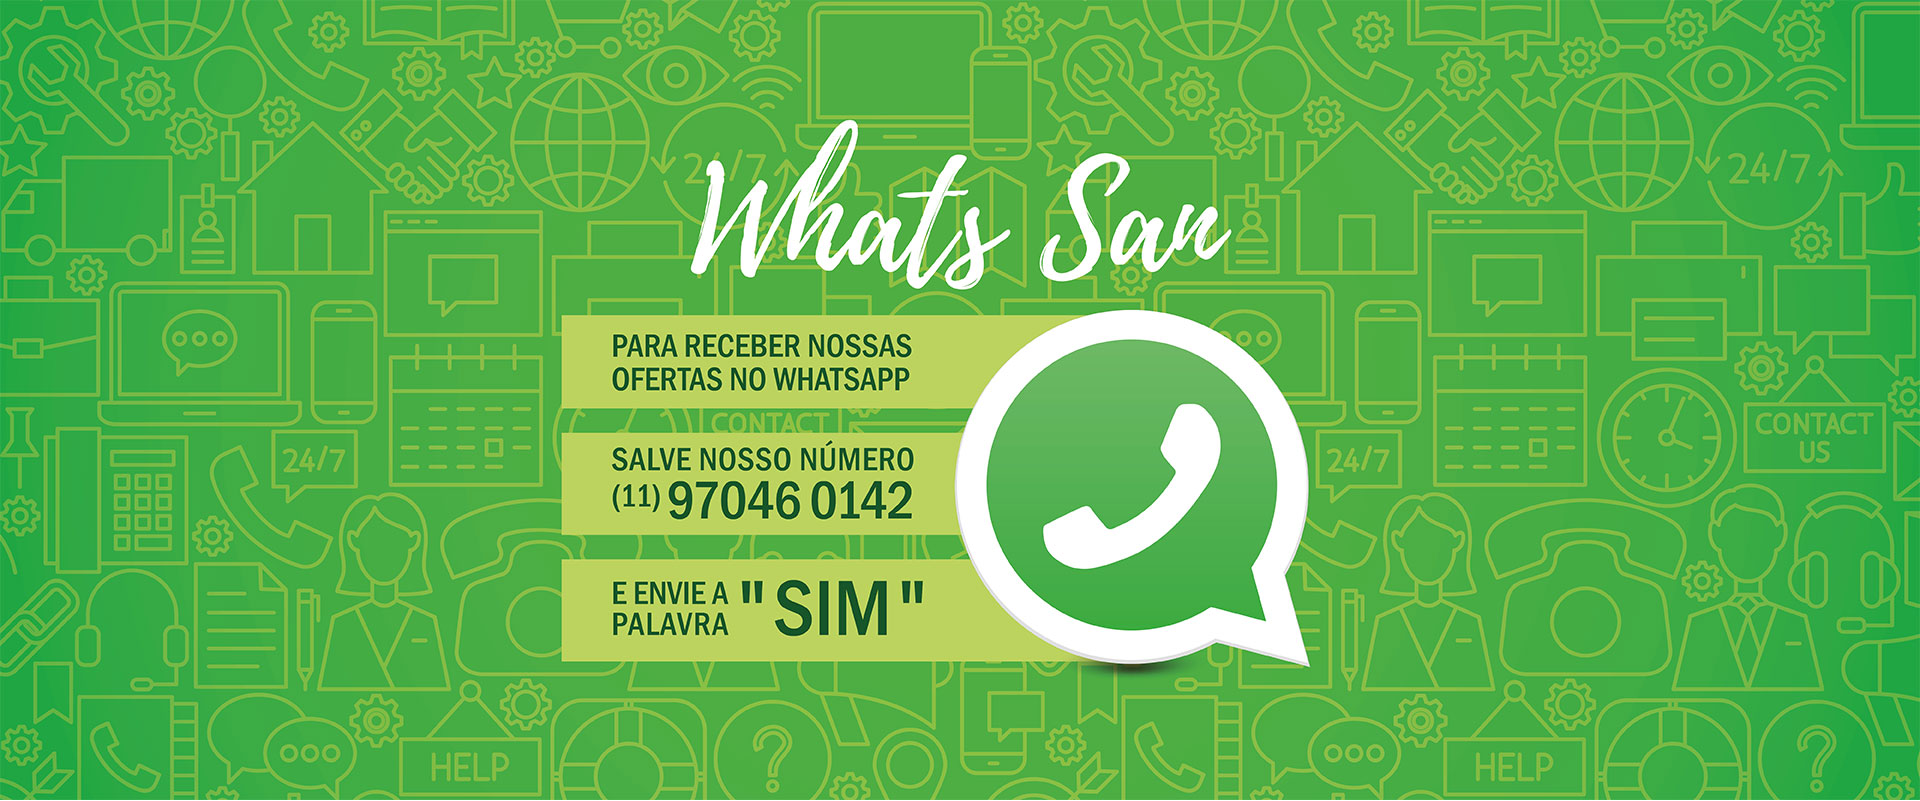 Banner_Site-SAN-Supermercados_WhatsApp_1